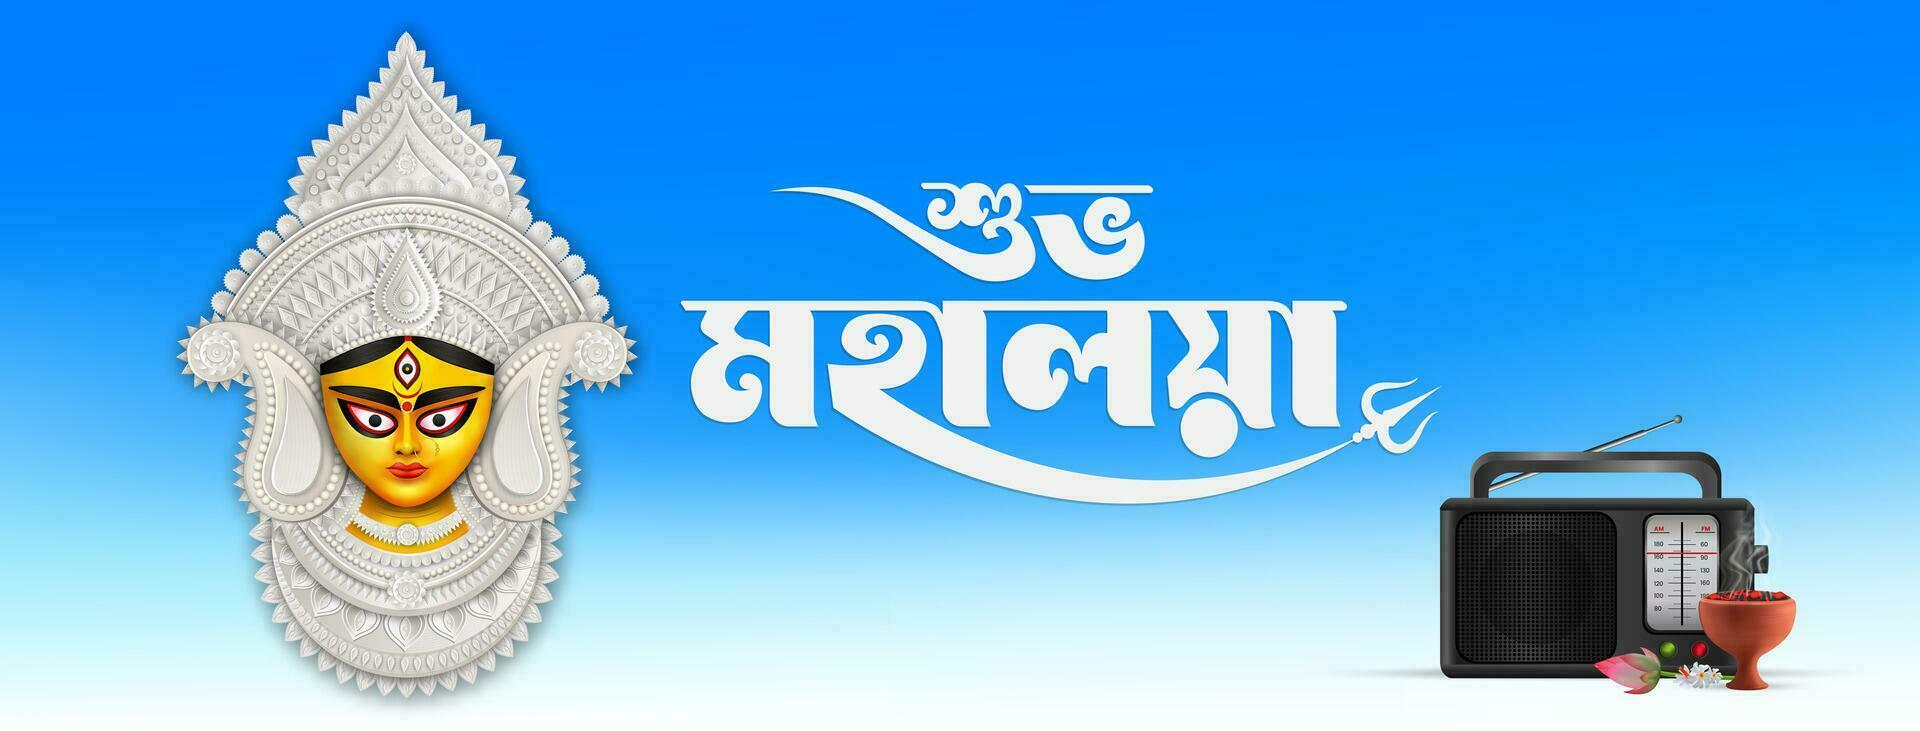 Mahalaya creativo social medios de comunicación enviar para Durga puja celebracion Durga puja es el más grande festival en Bengala. vector